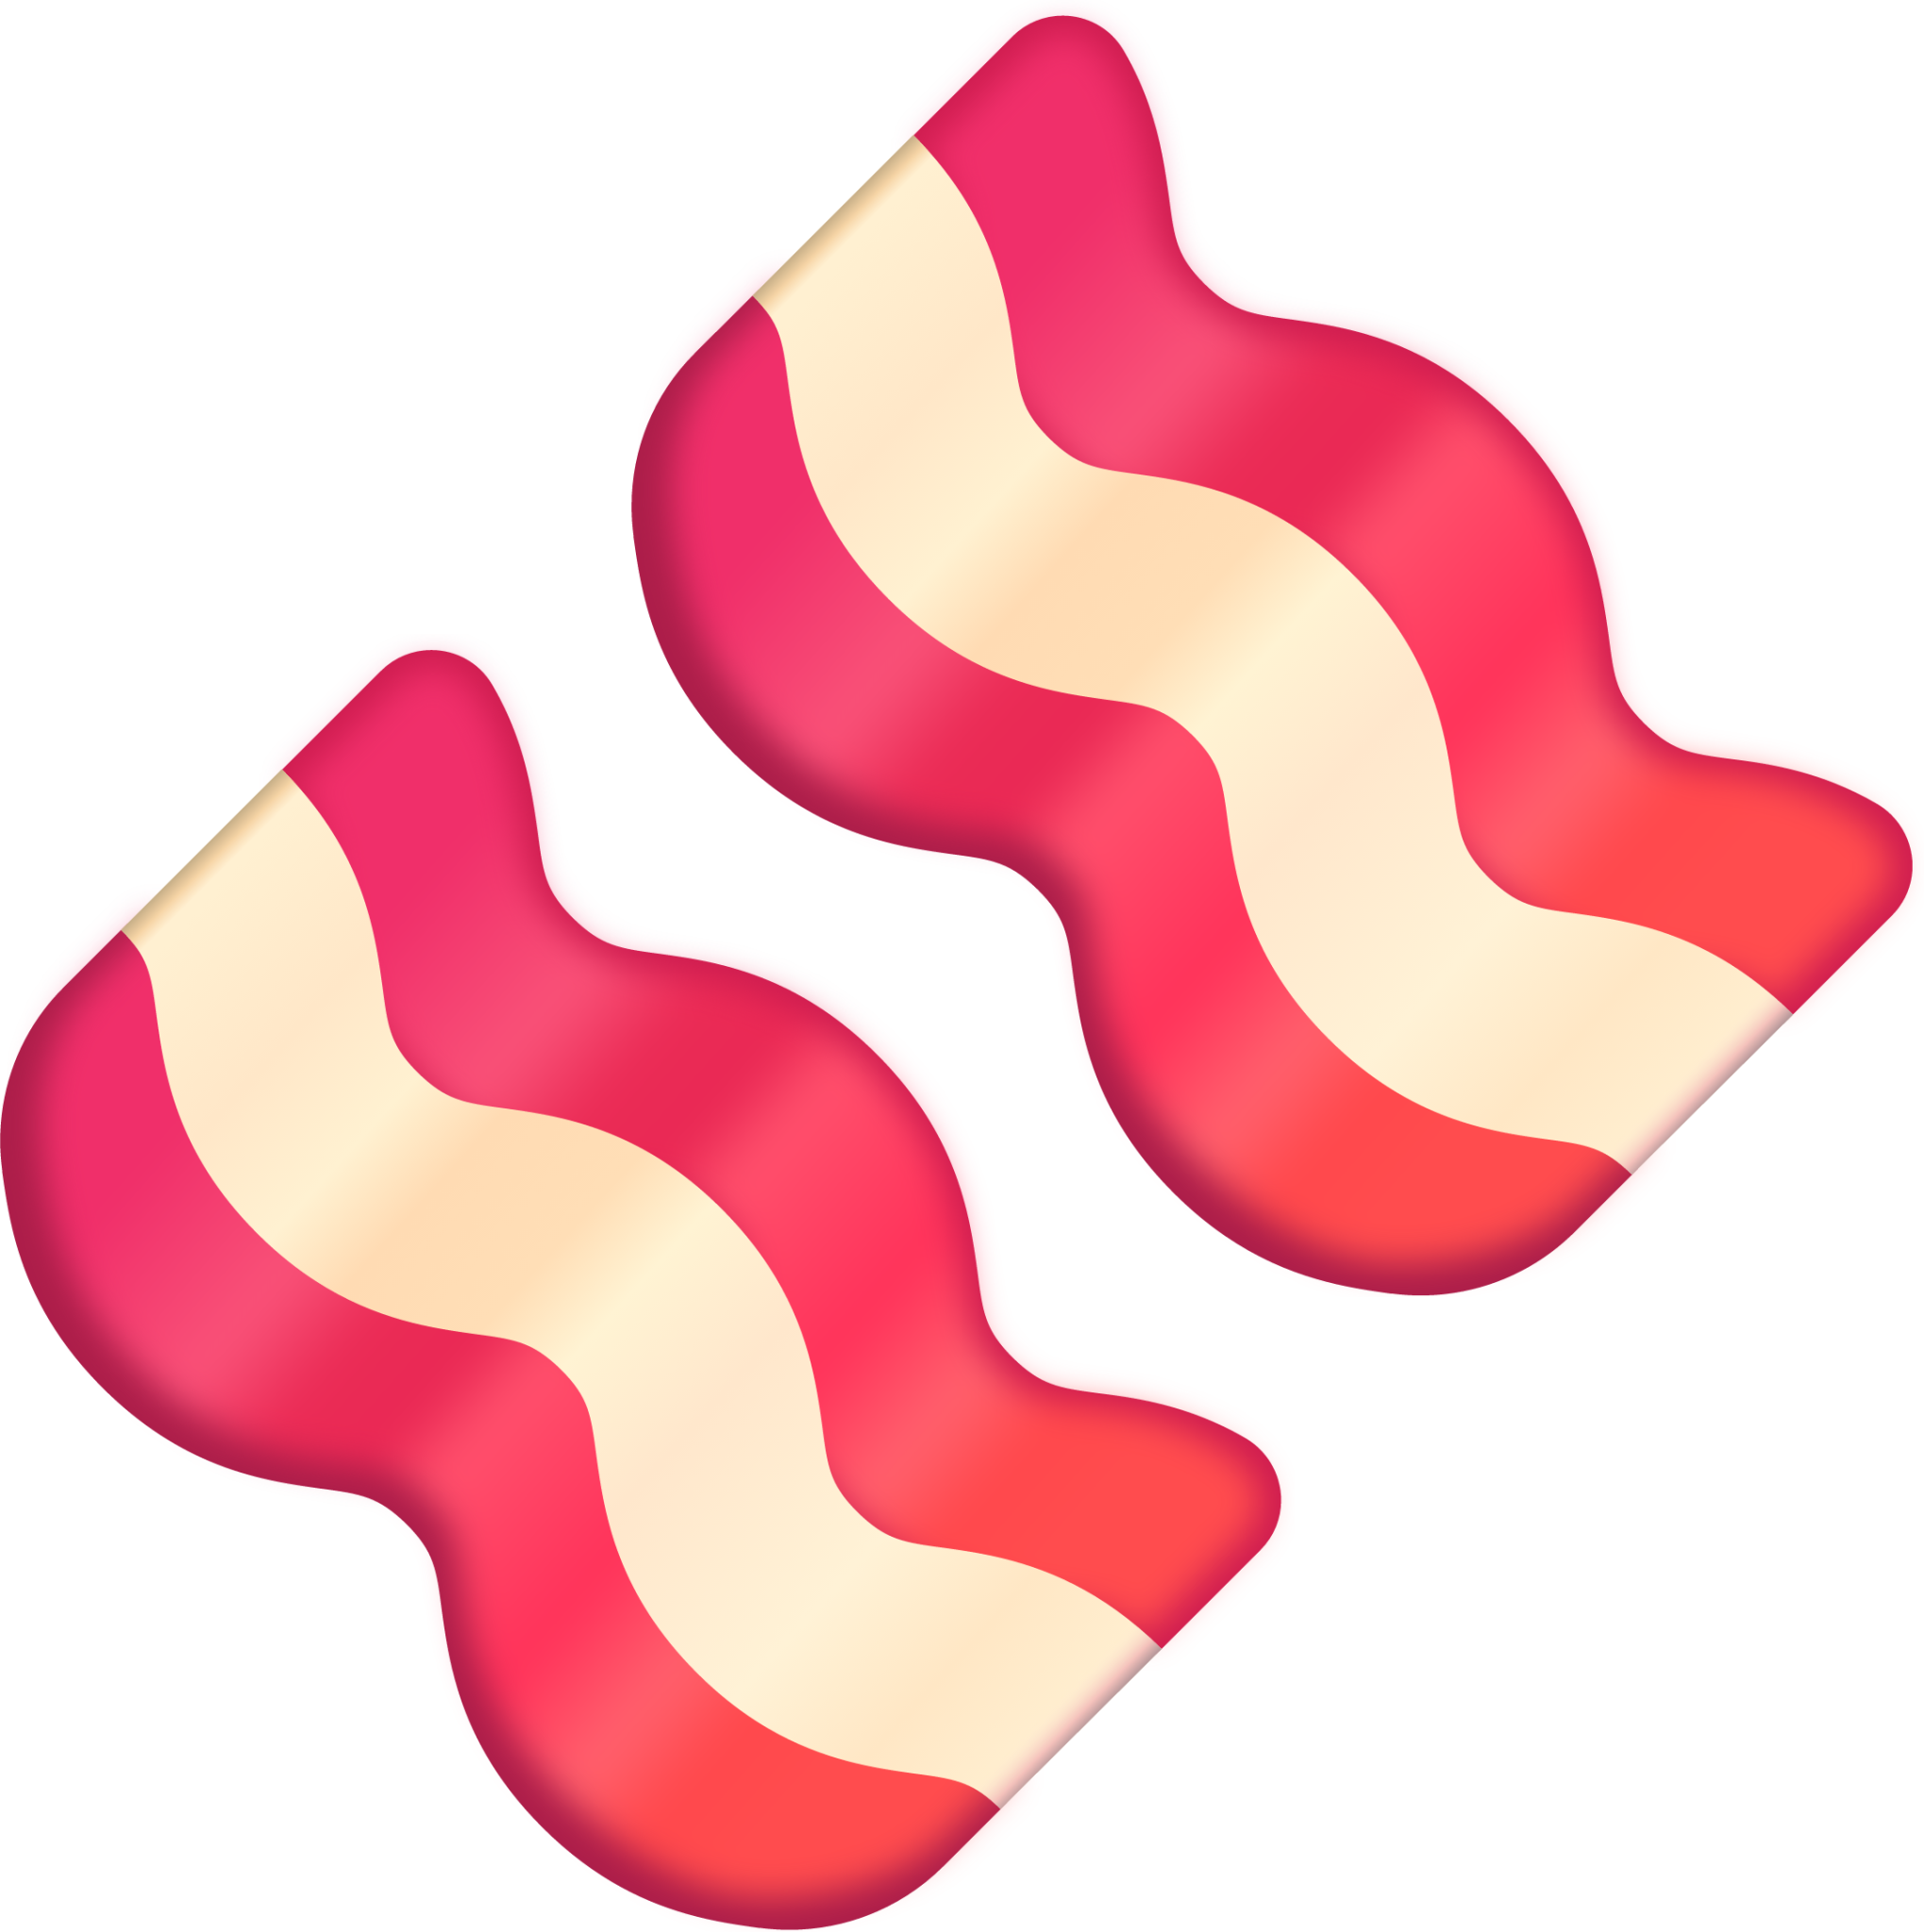 bacon emoticon